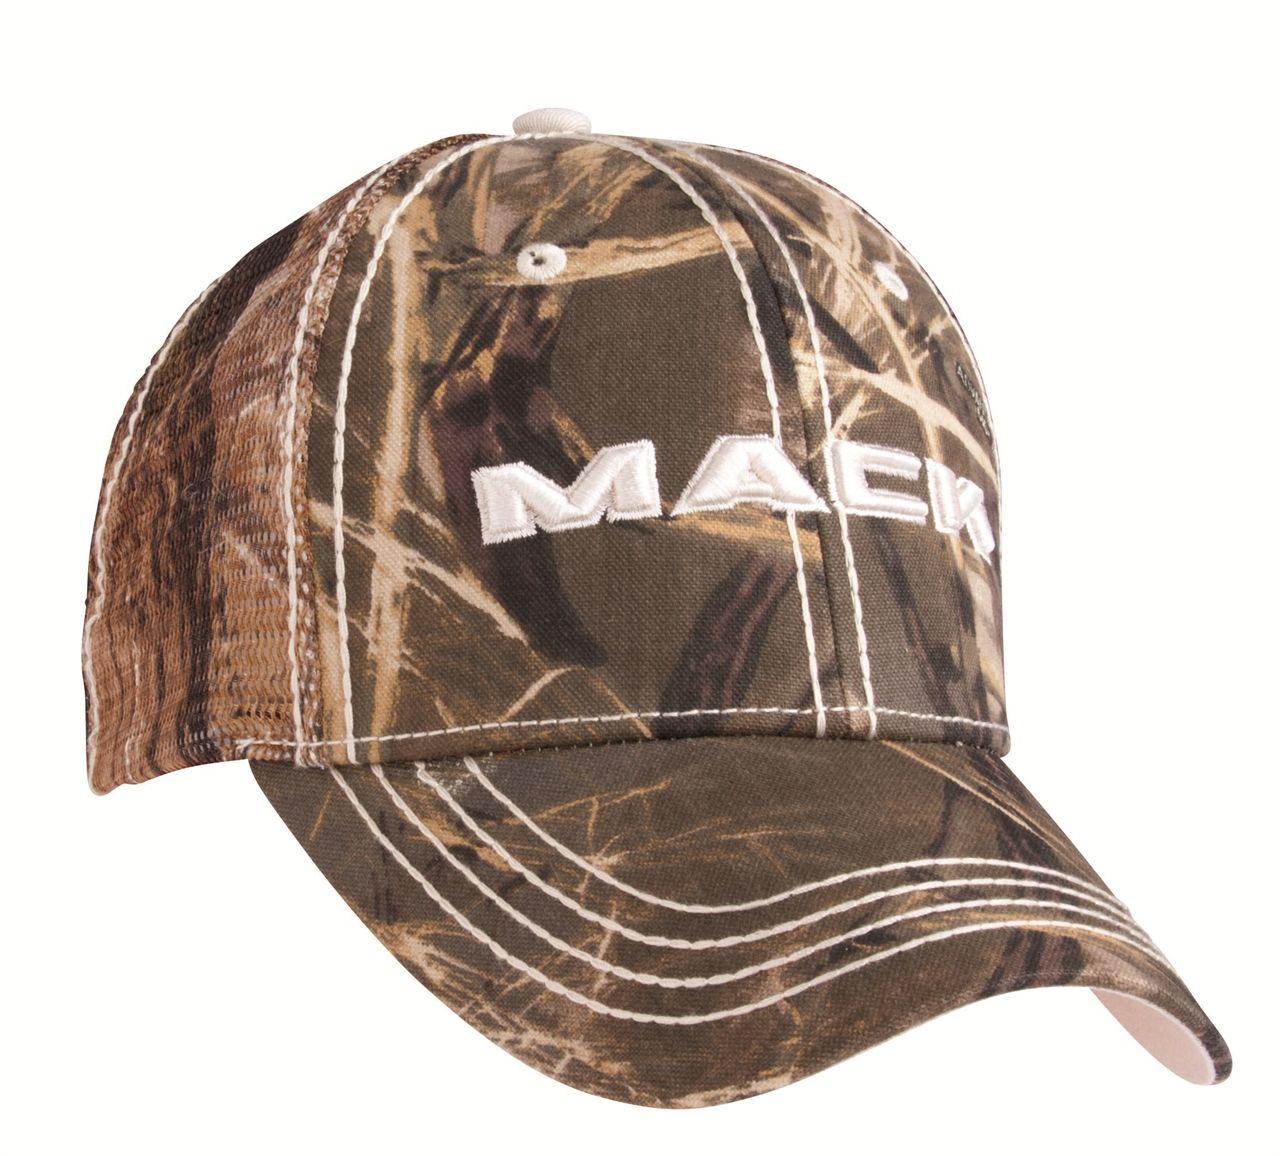 Camo Mack Logo - MACK FRONT GRILL LOGO CAMO MESH CAP | Mack Shop